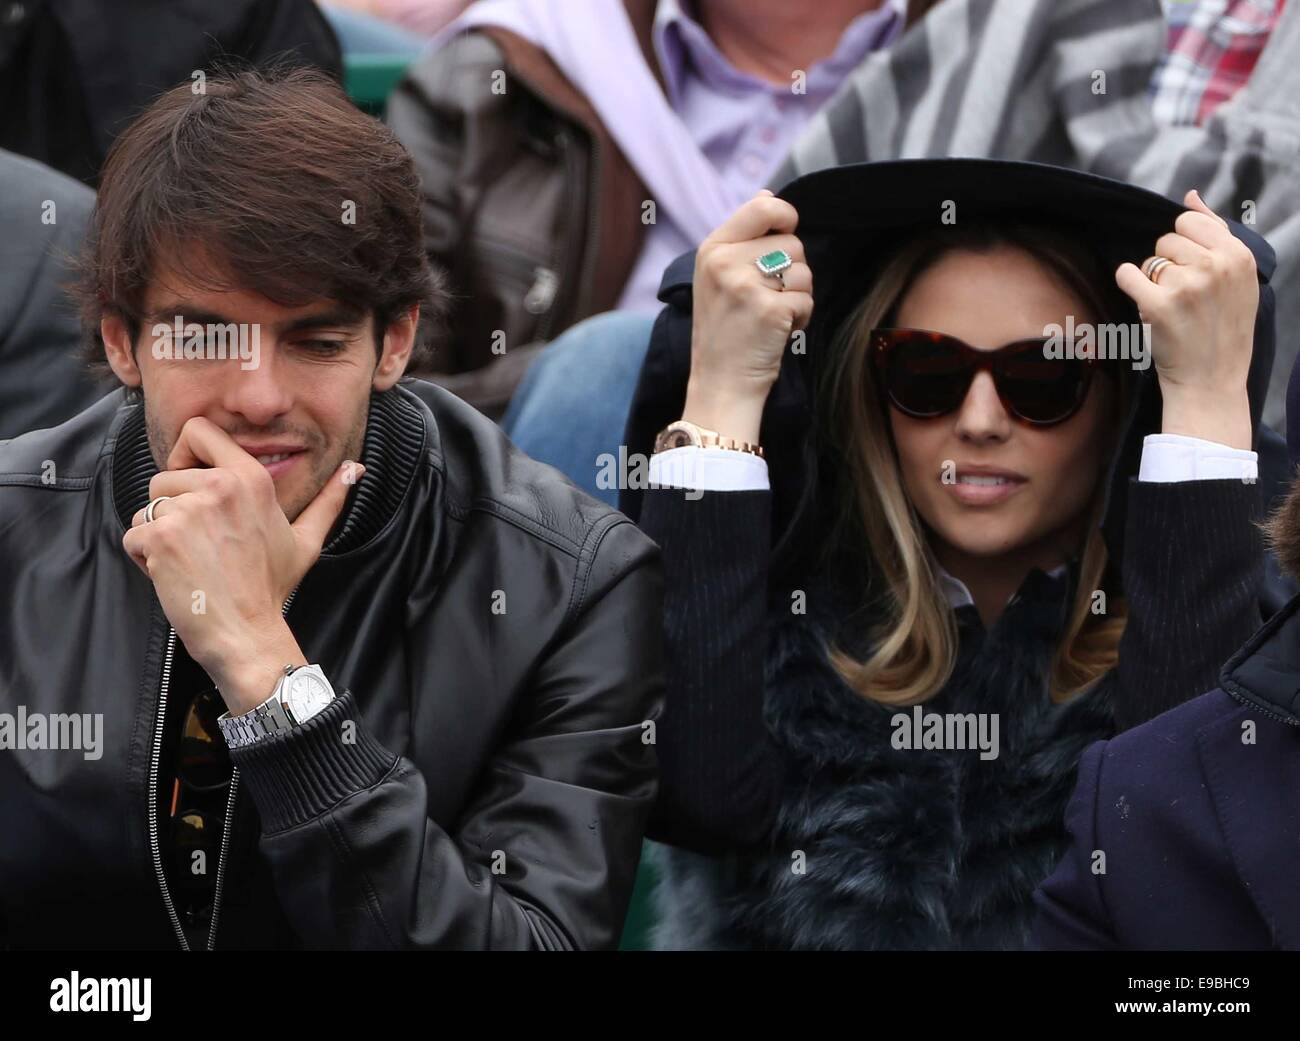 Kaka and his wife Caroline Celico attend the Giorgio Armani Boutique, WireImage